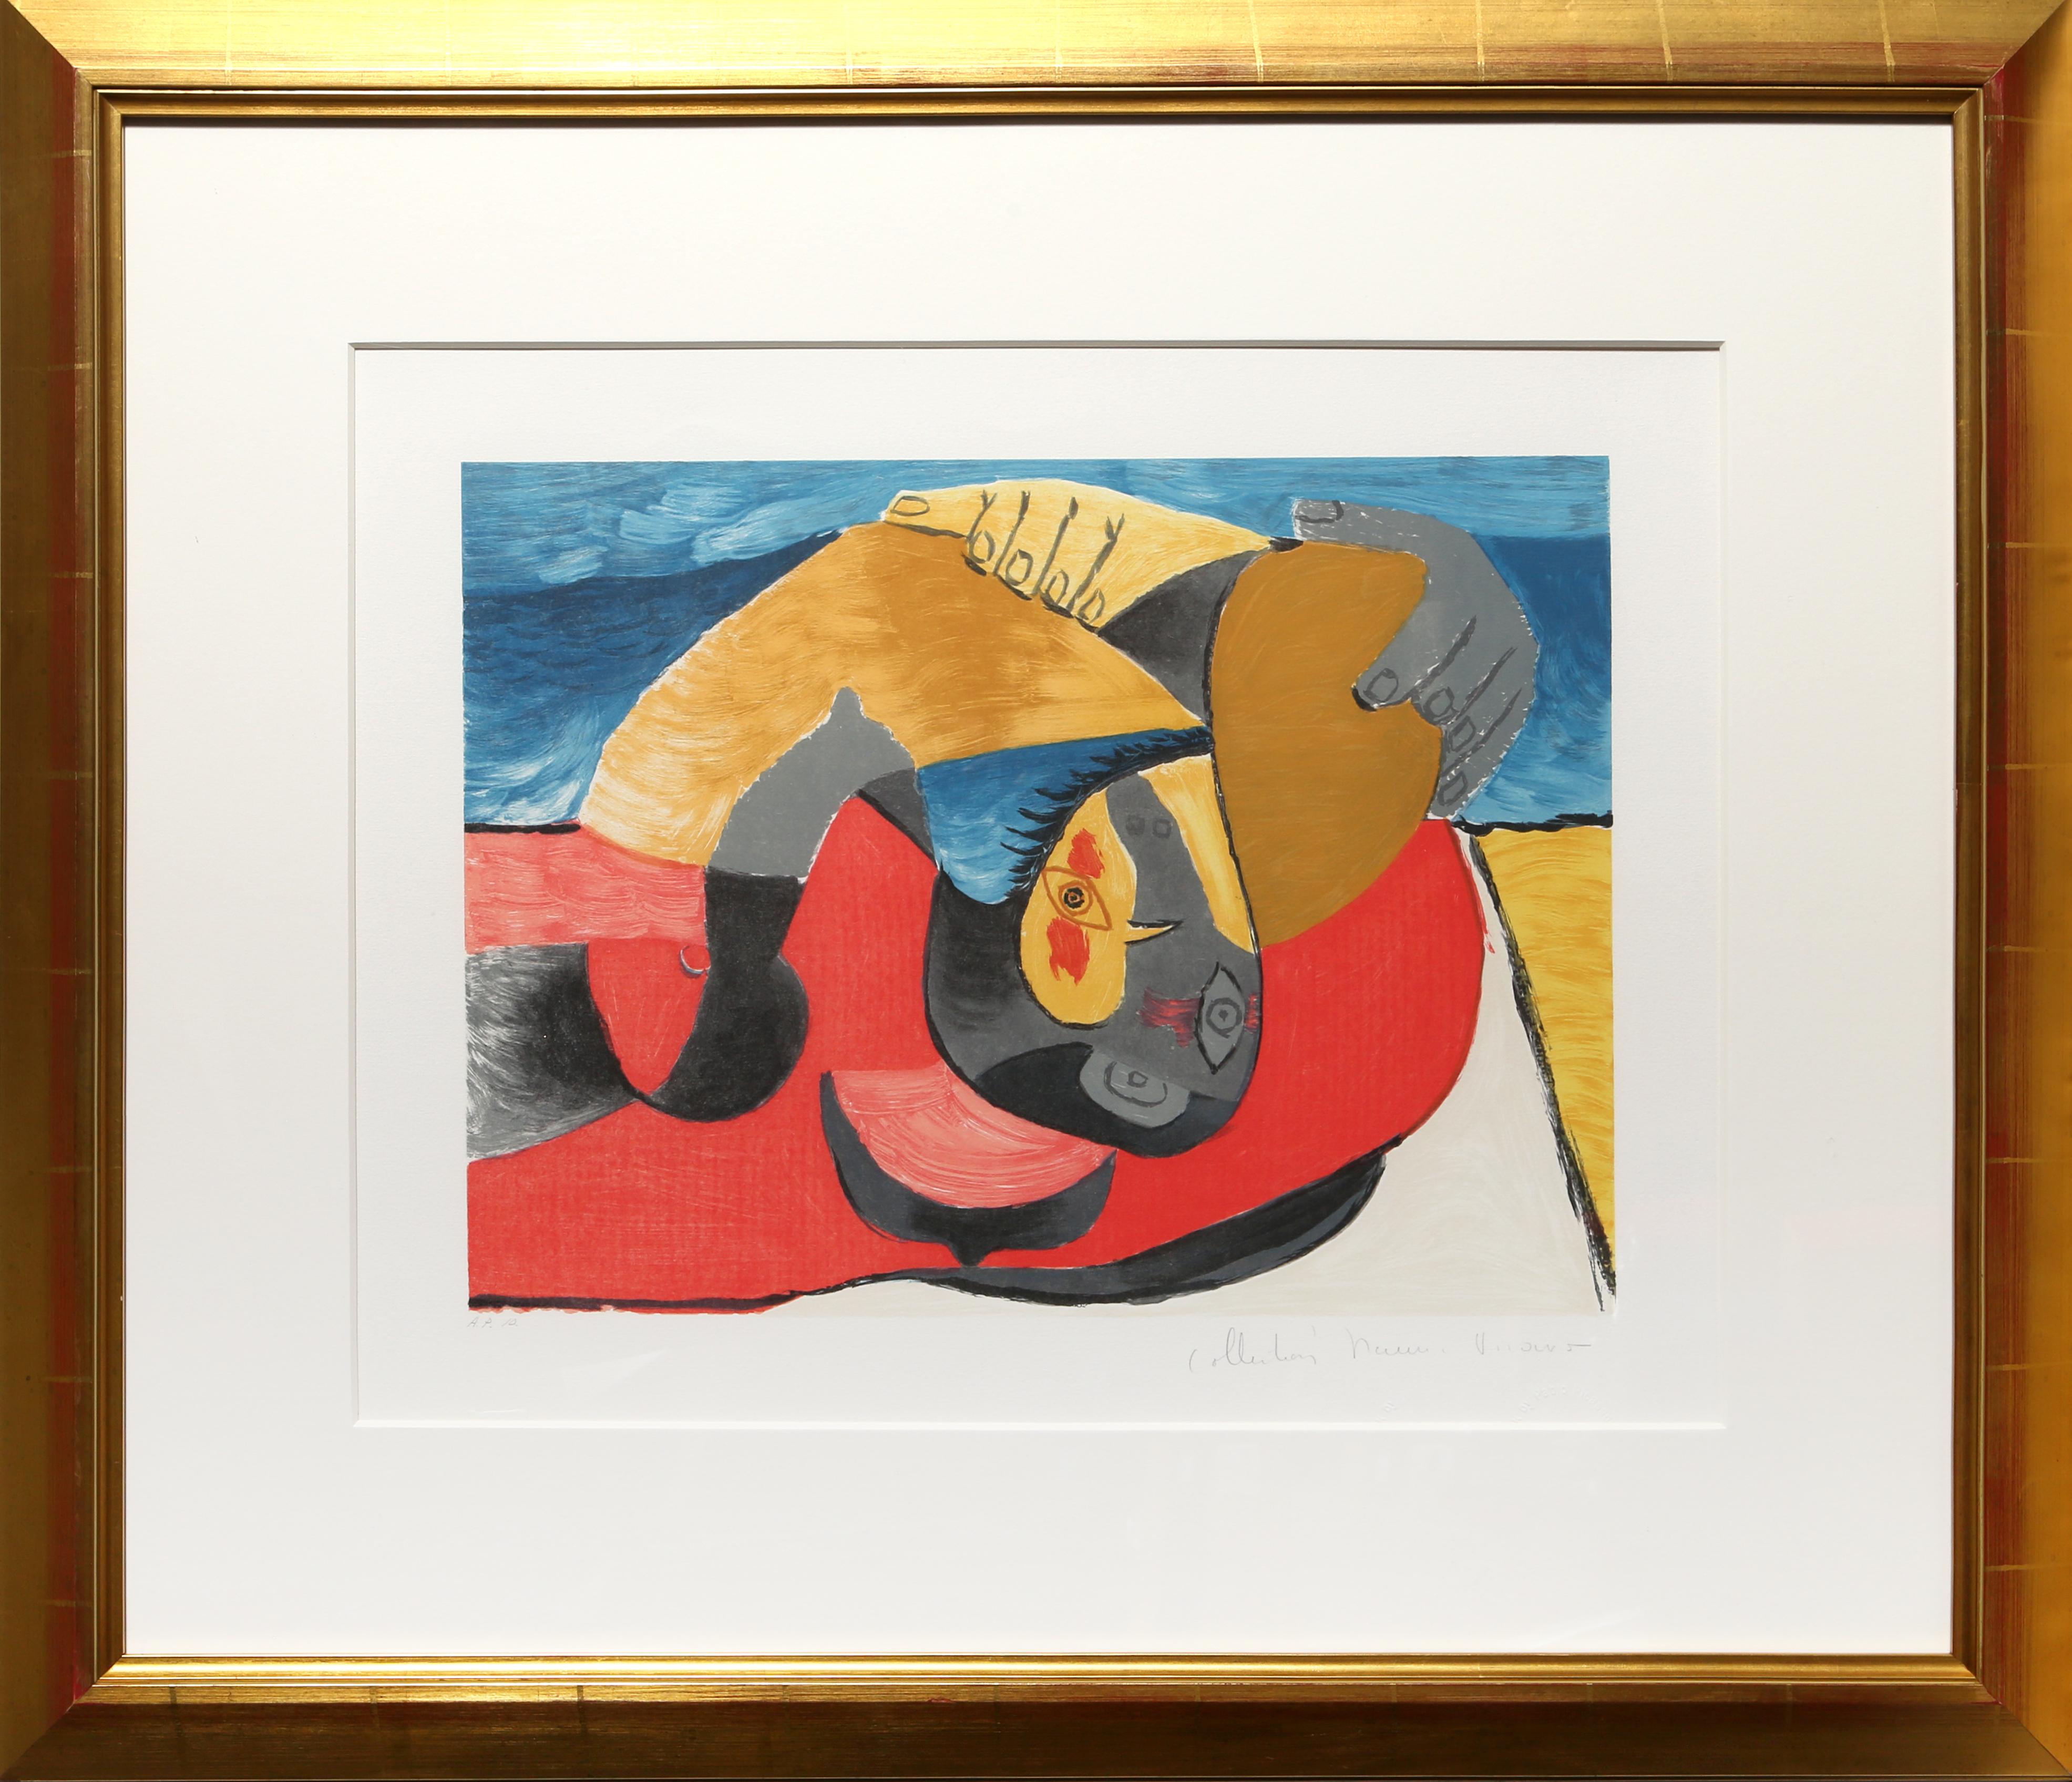 Eine Lithographie aus der Marina Picasso Estate Collection nach dem Gemälde "Femme Couchee" von Pablo Picasso.  Das Originalgemälde wurde 1942 fertiggestellt. In den 1970er Jahren, nach Picassos Tod, autorisierte Marina Picasso, seine Enkelin, die